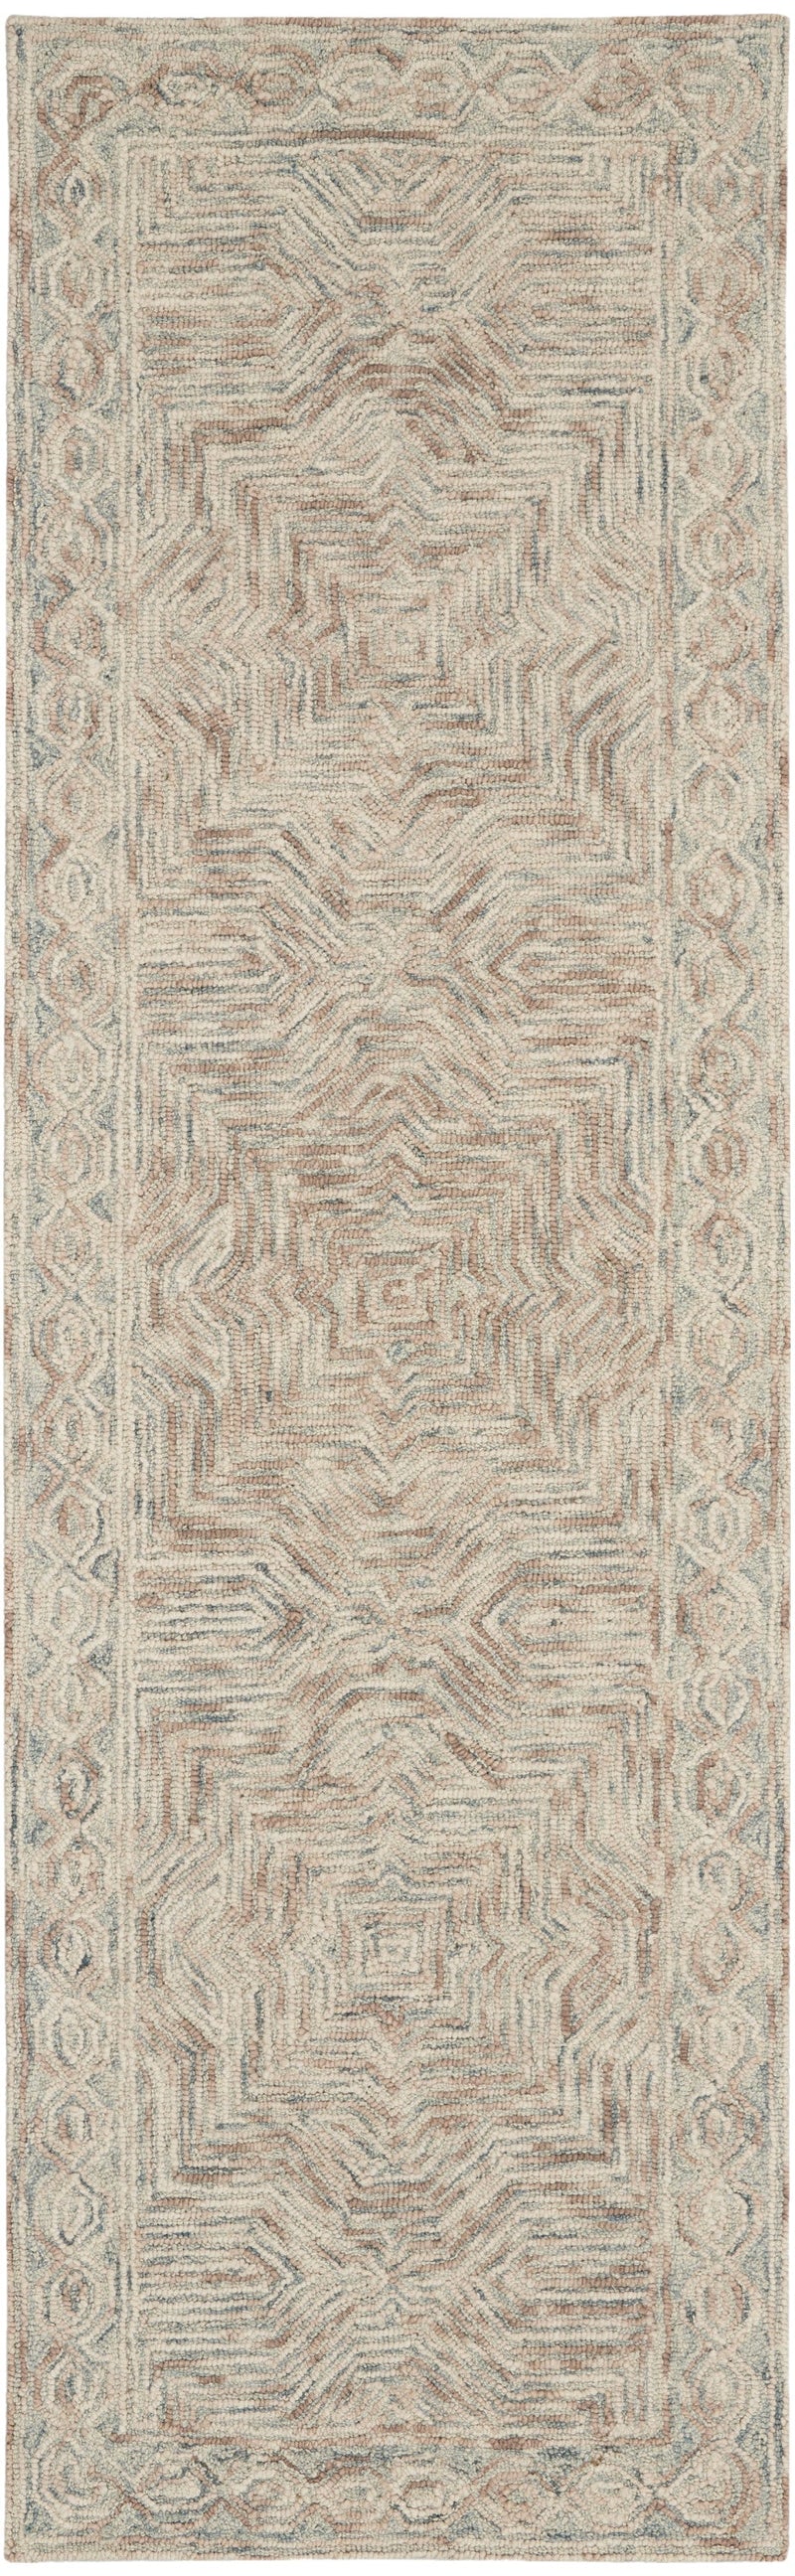 media image for interlock handmade blue ivory rug by nourison 99446785985 redo 2 235